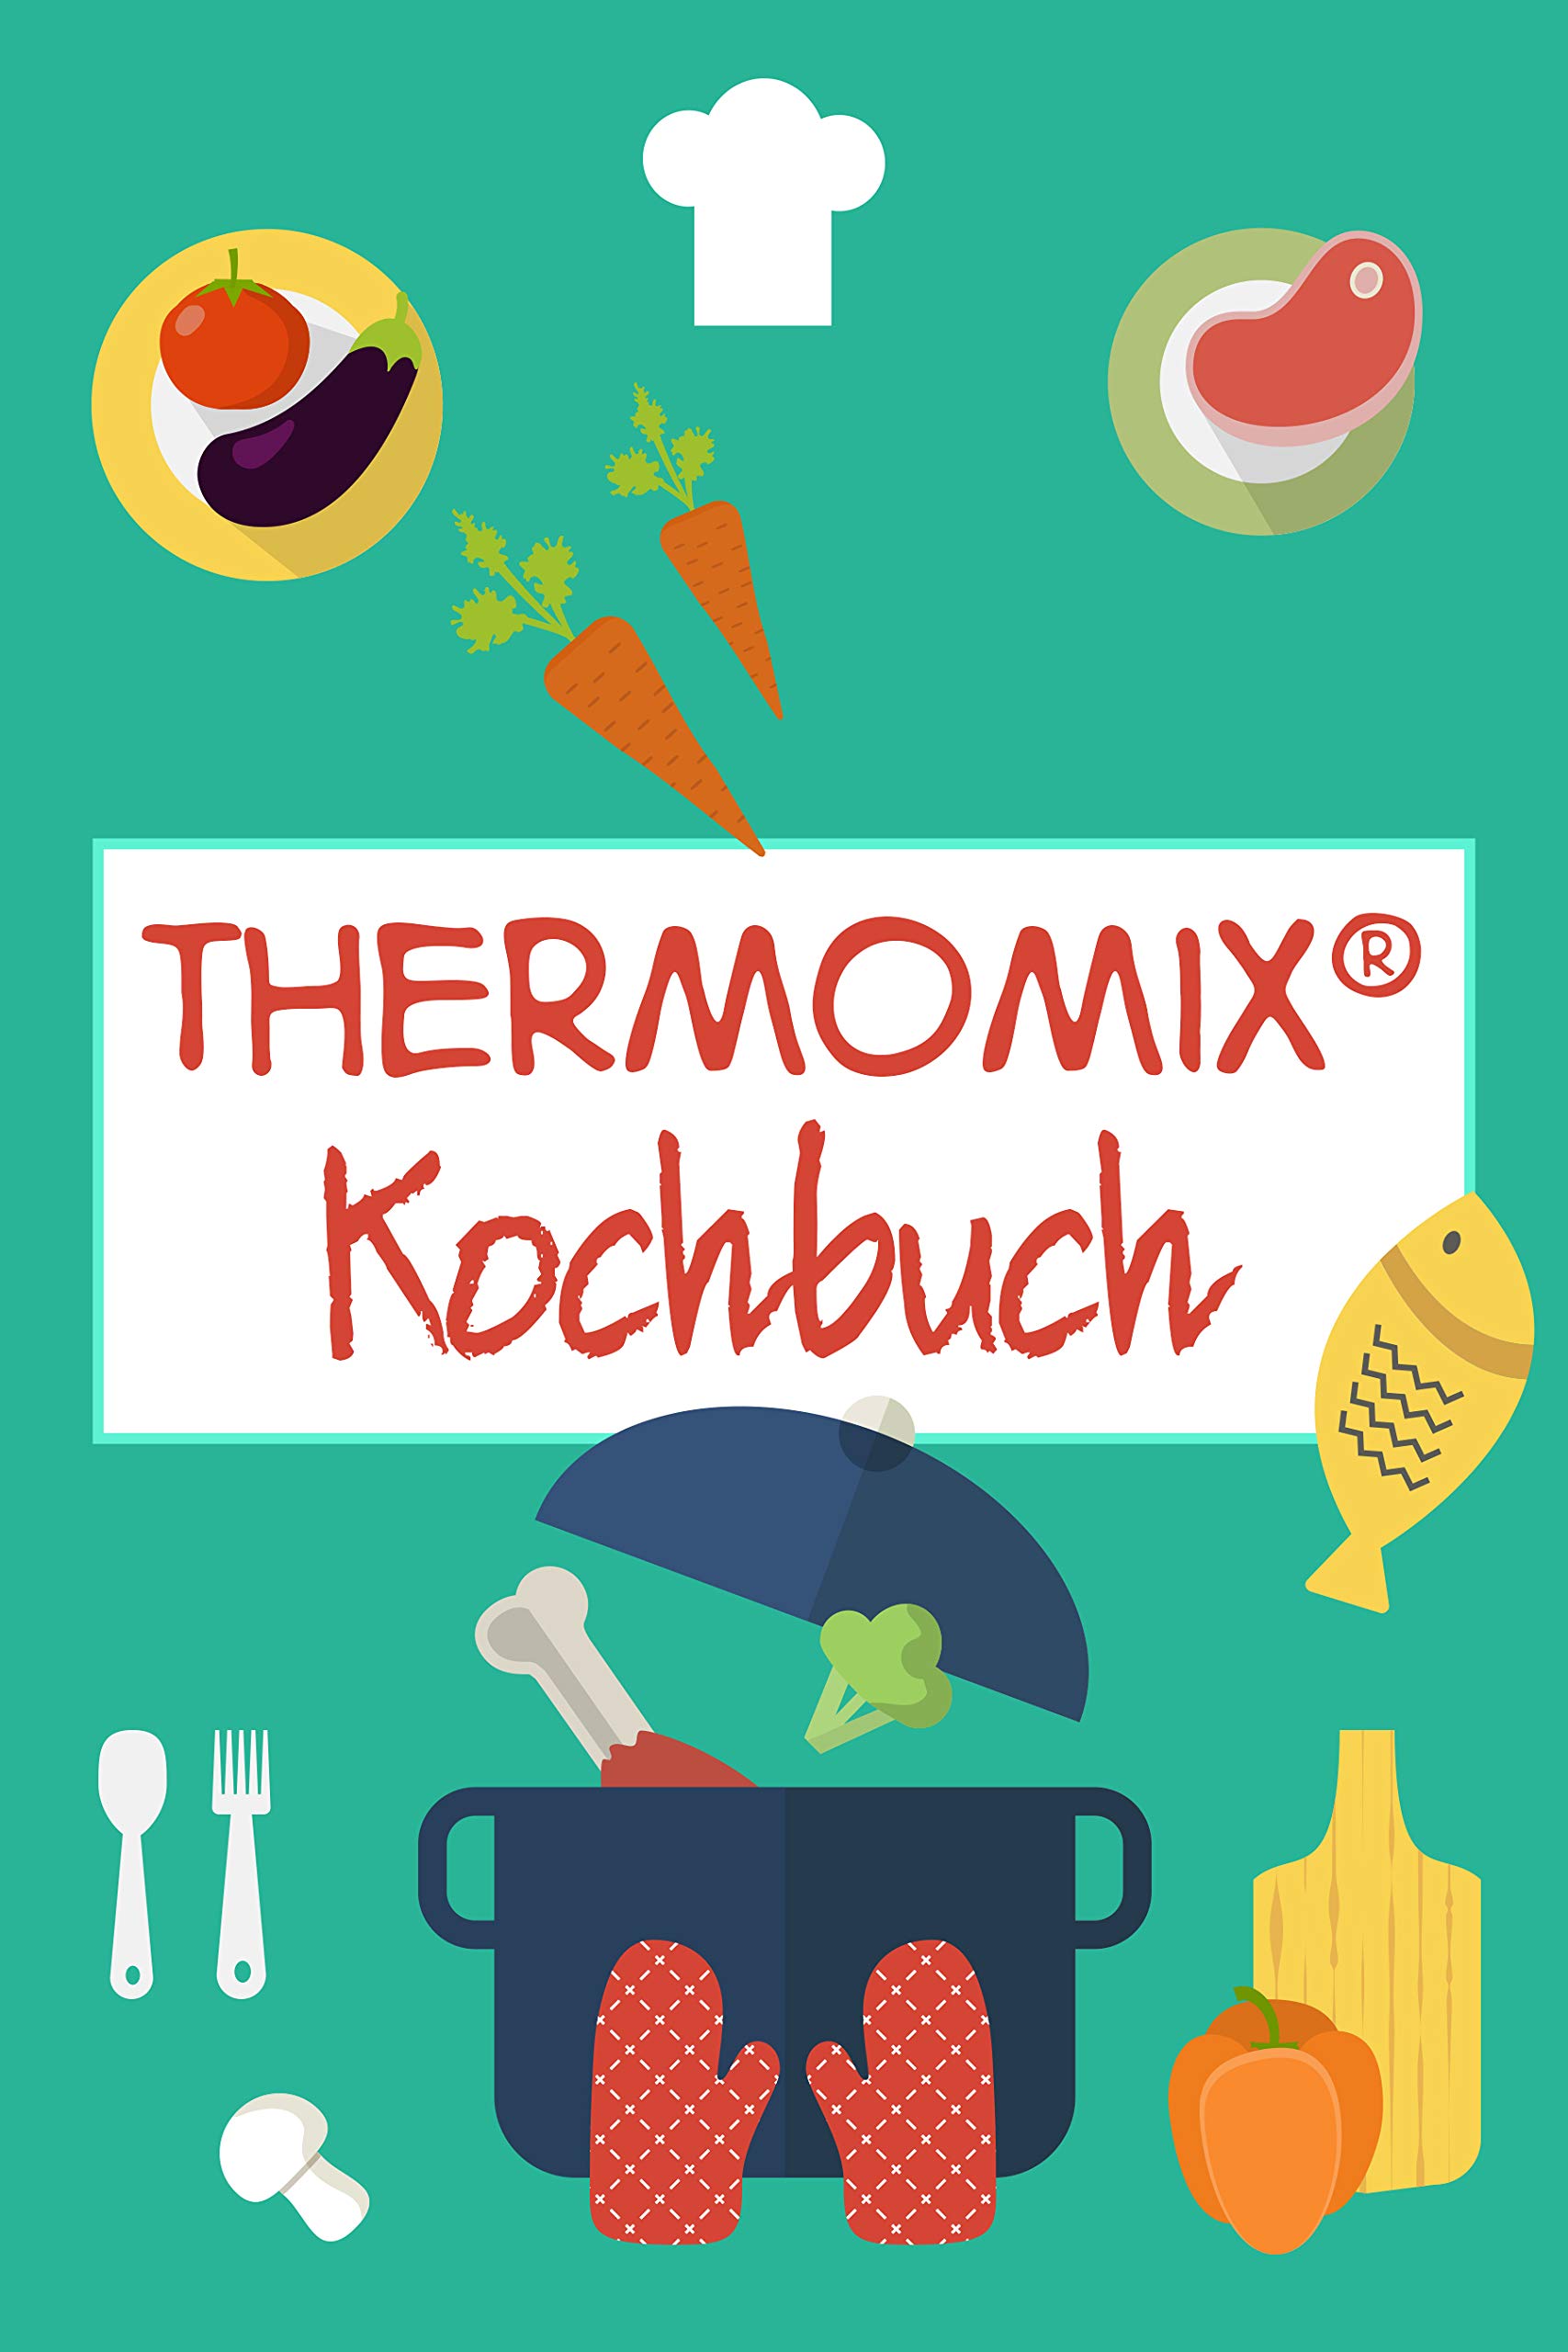 Thermomix® Kochbuch: Schnelle und leckere Thermomix Rezepte (German Edition)